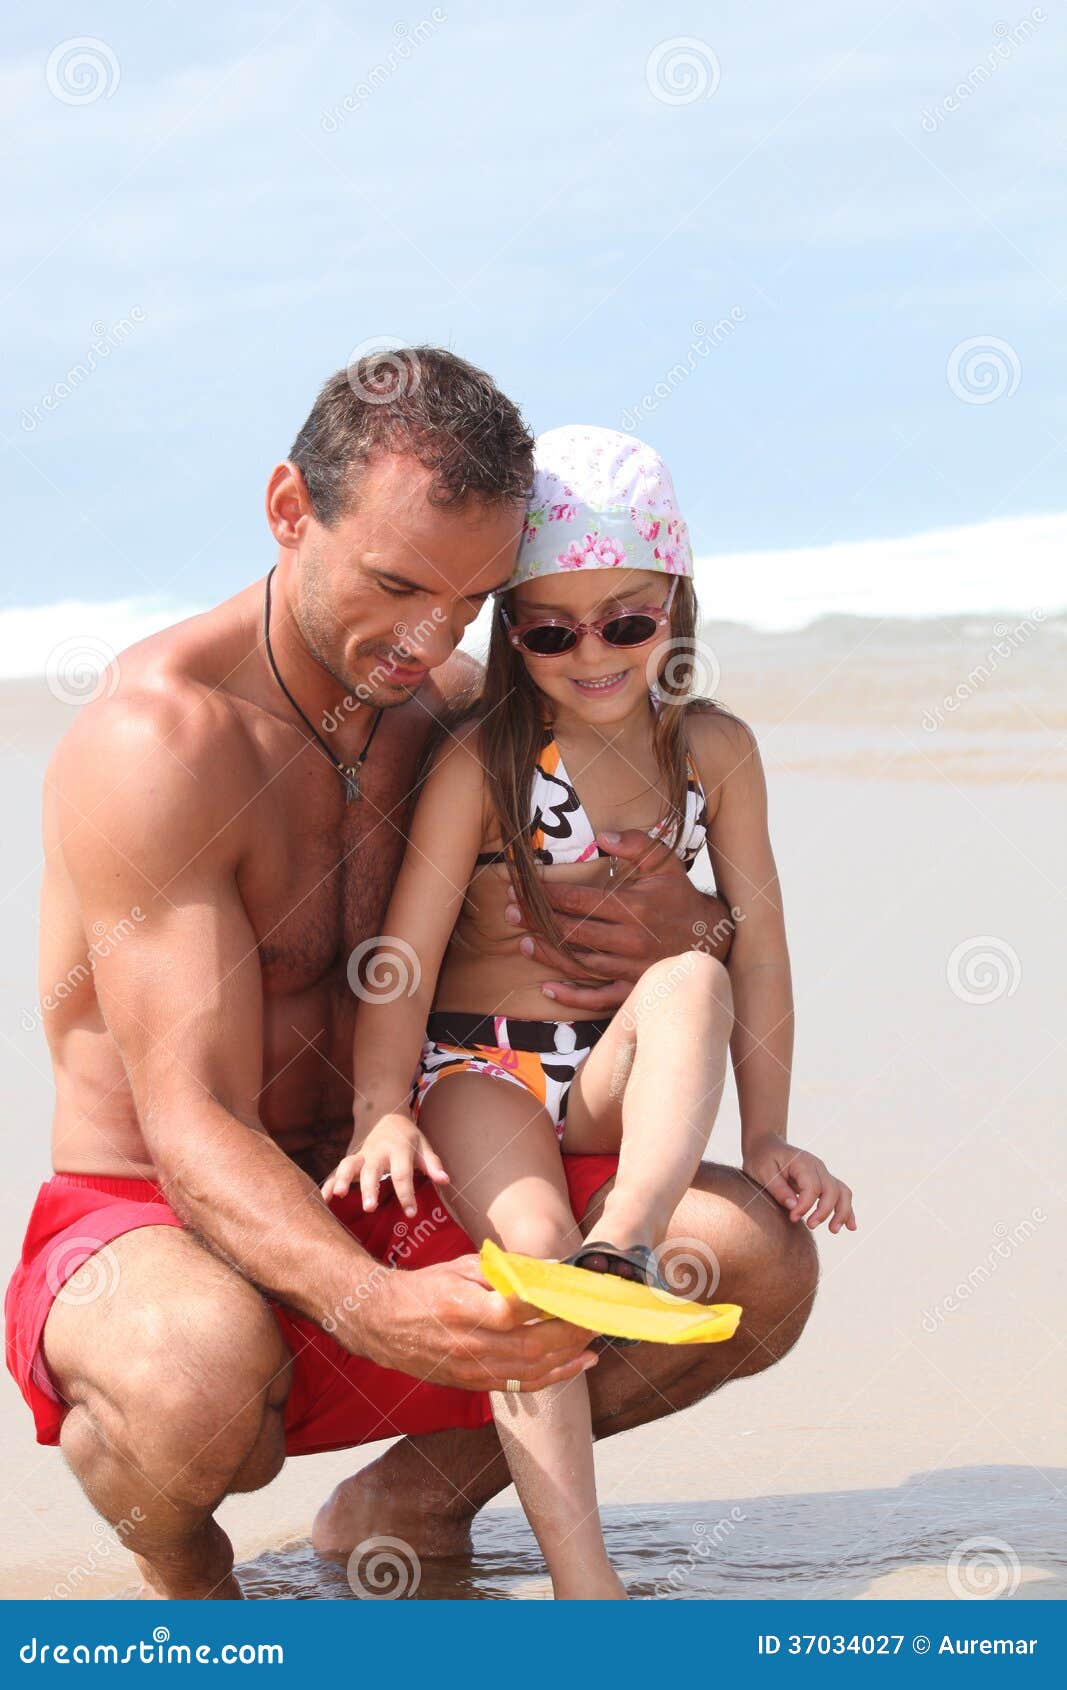 дочка с папой на голом пляже фото 26